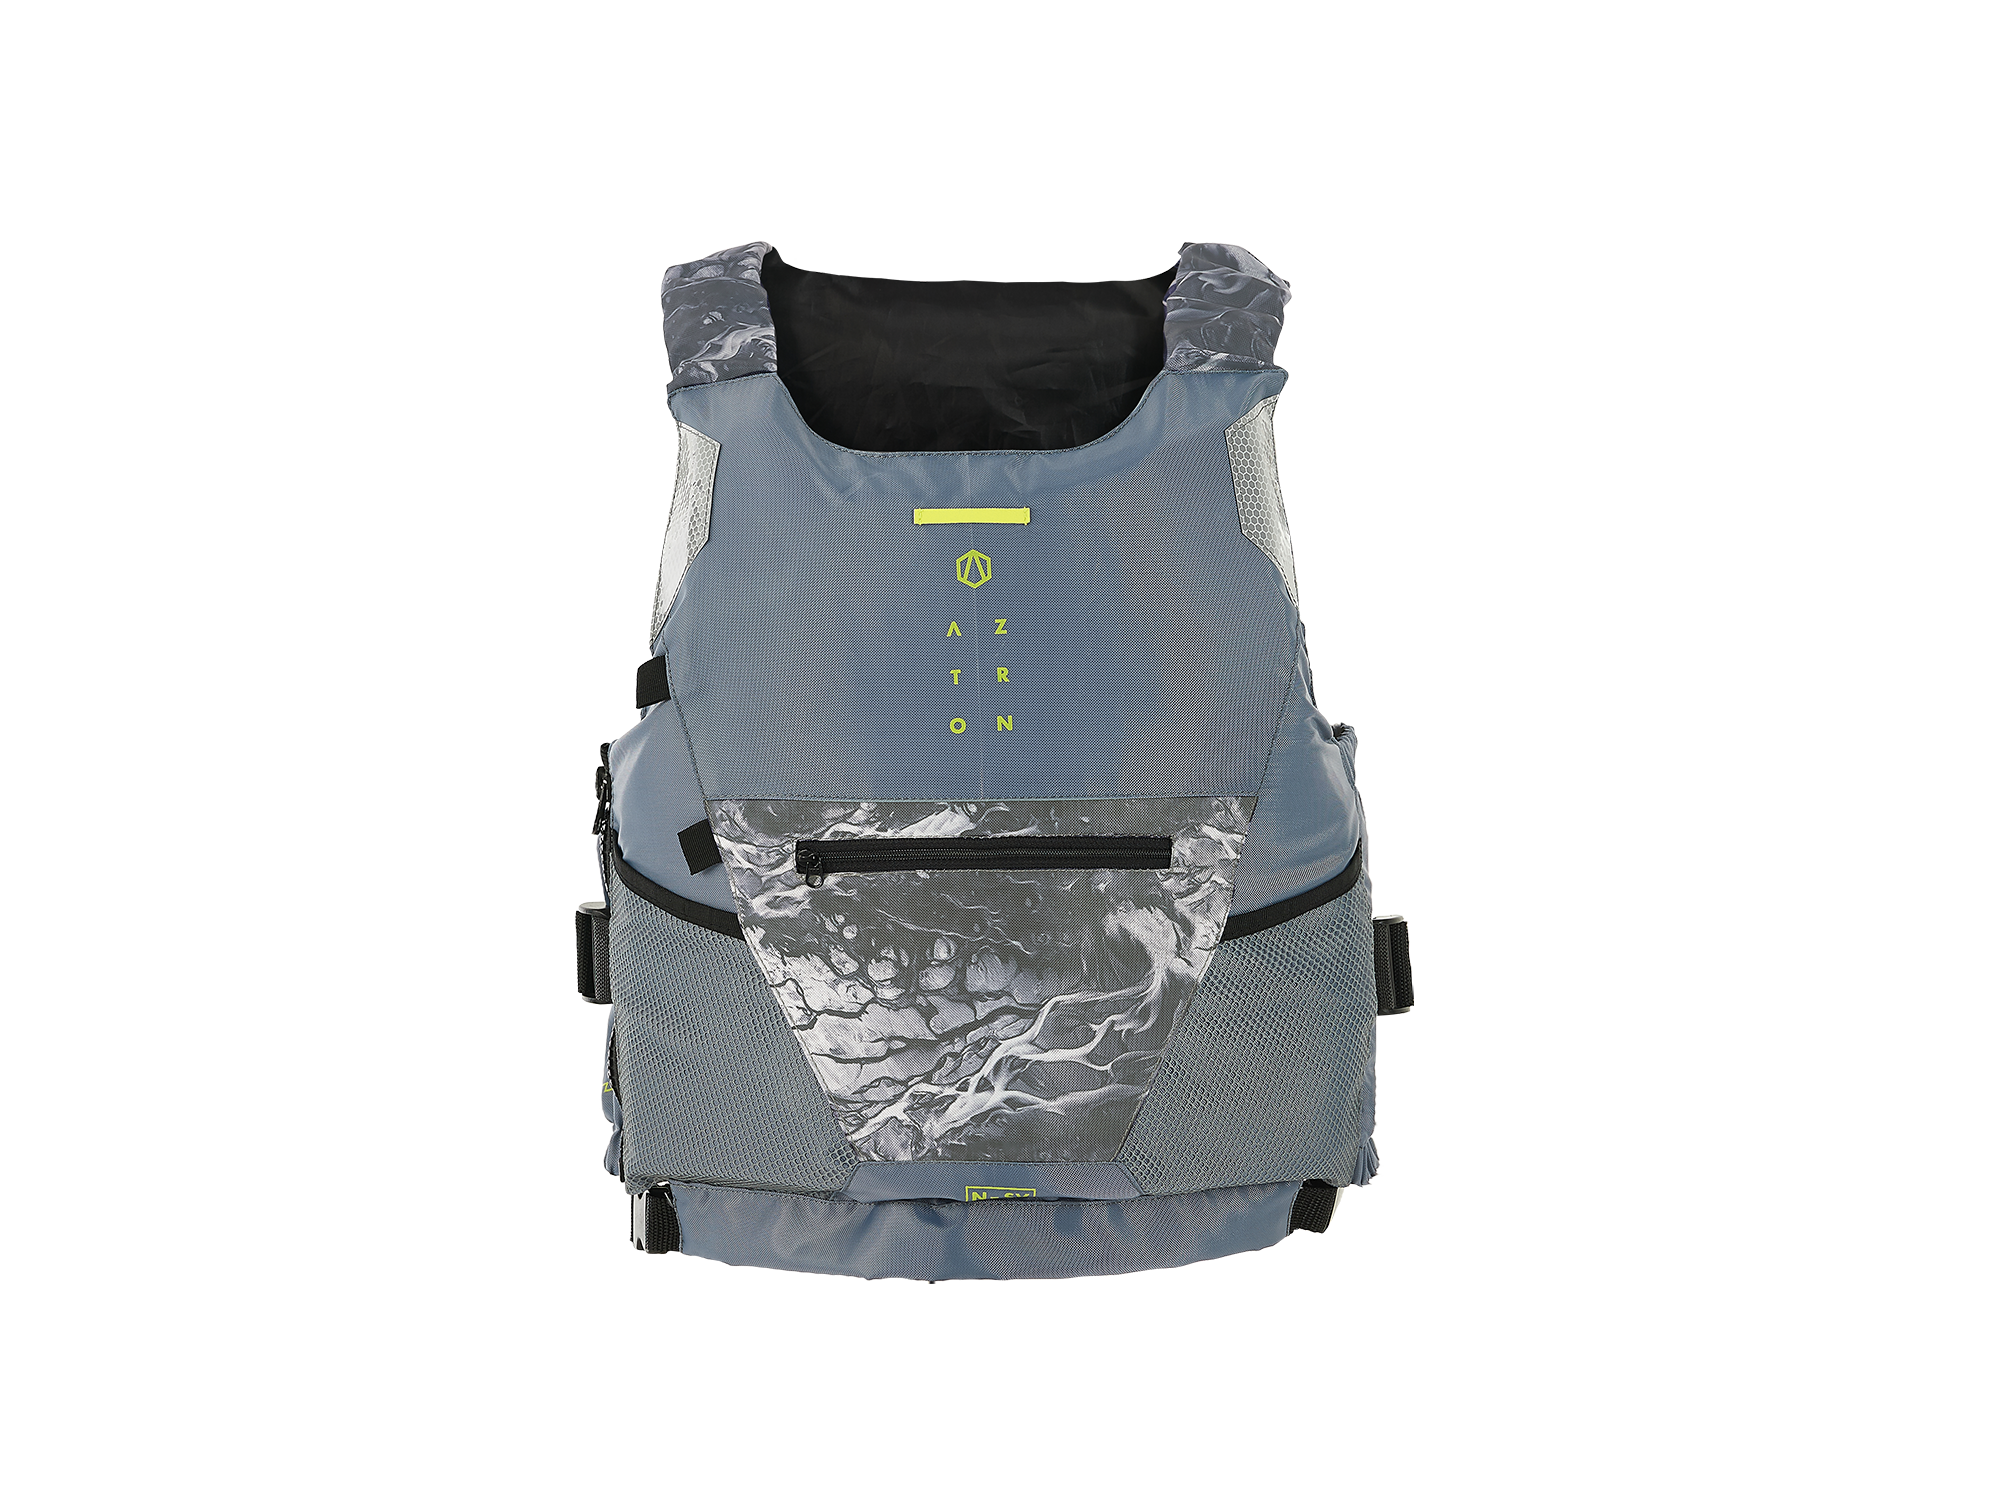 AZTRON Safety Vest / Auftriebsweste / Sicherheitsweste N-SV 2.0 Herren